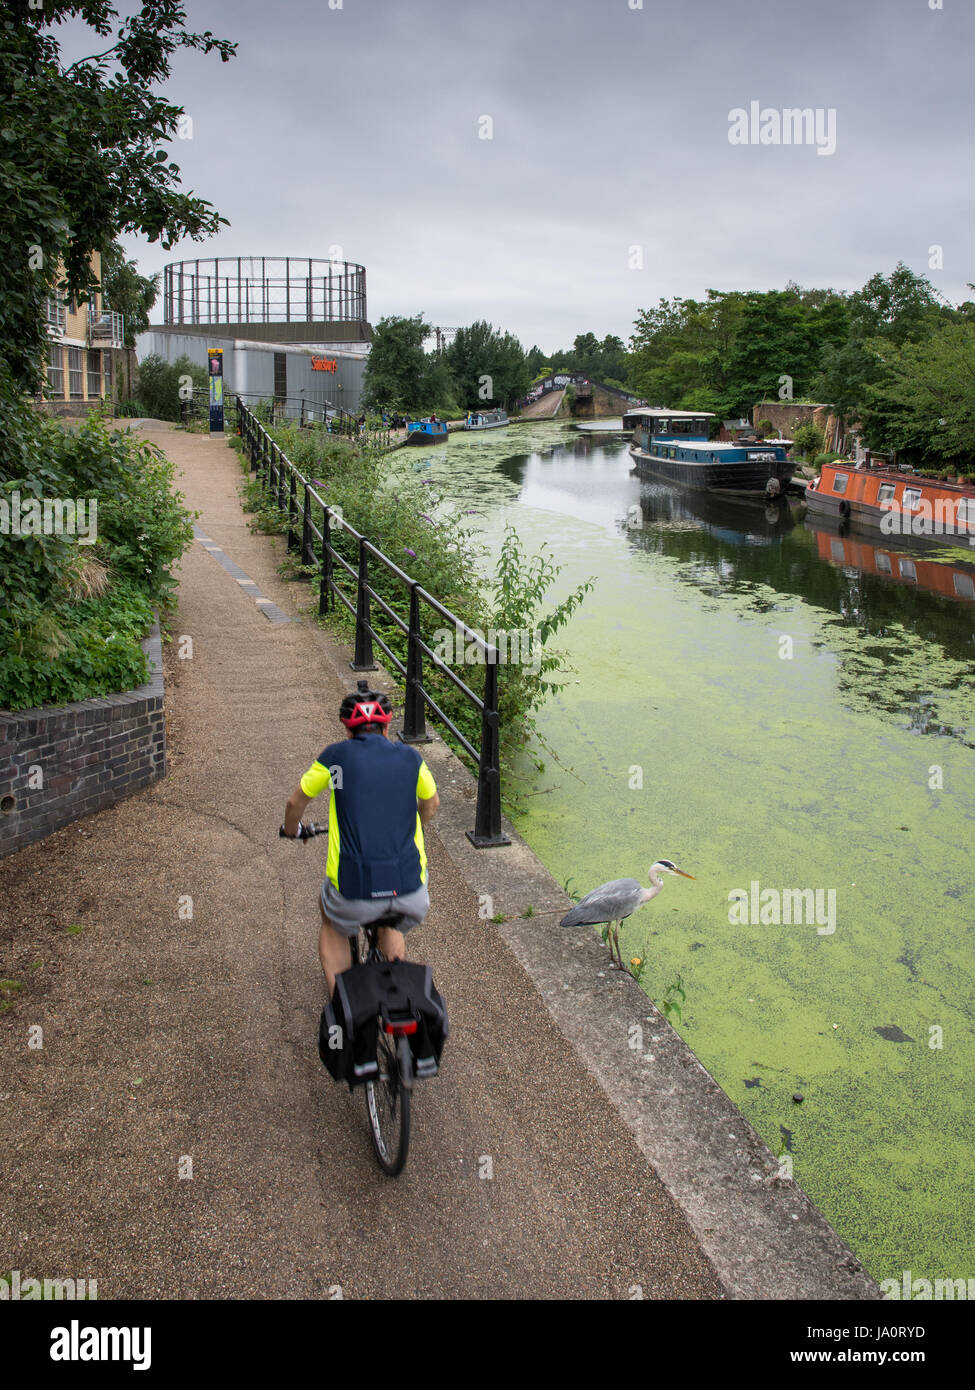 Londres, Angleterre - 15 juillet 2016 : Un cycliste passe un héron sur le Grand Union Canal de halage à Ladbroke Grove à l'ouest de Londres. Banque D'Images